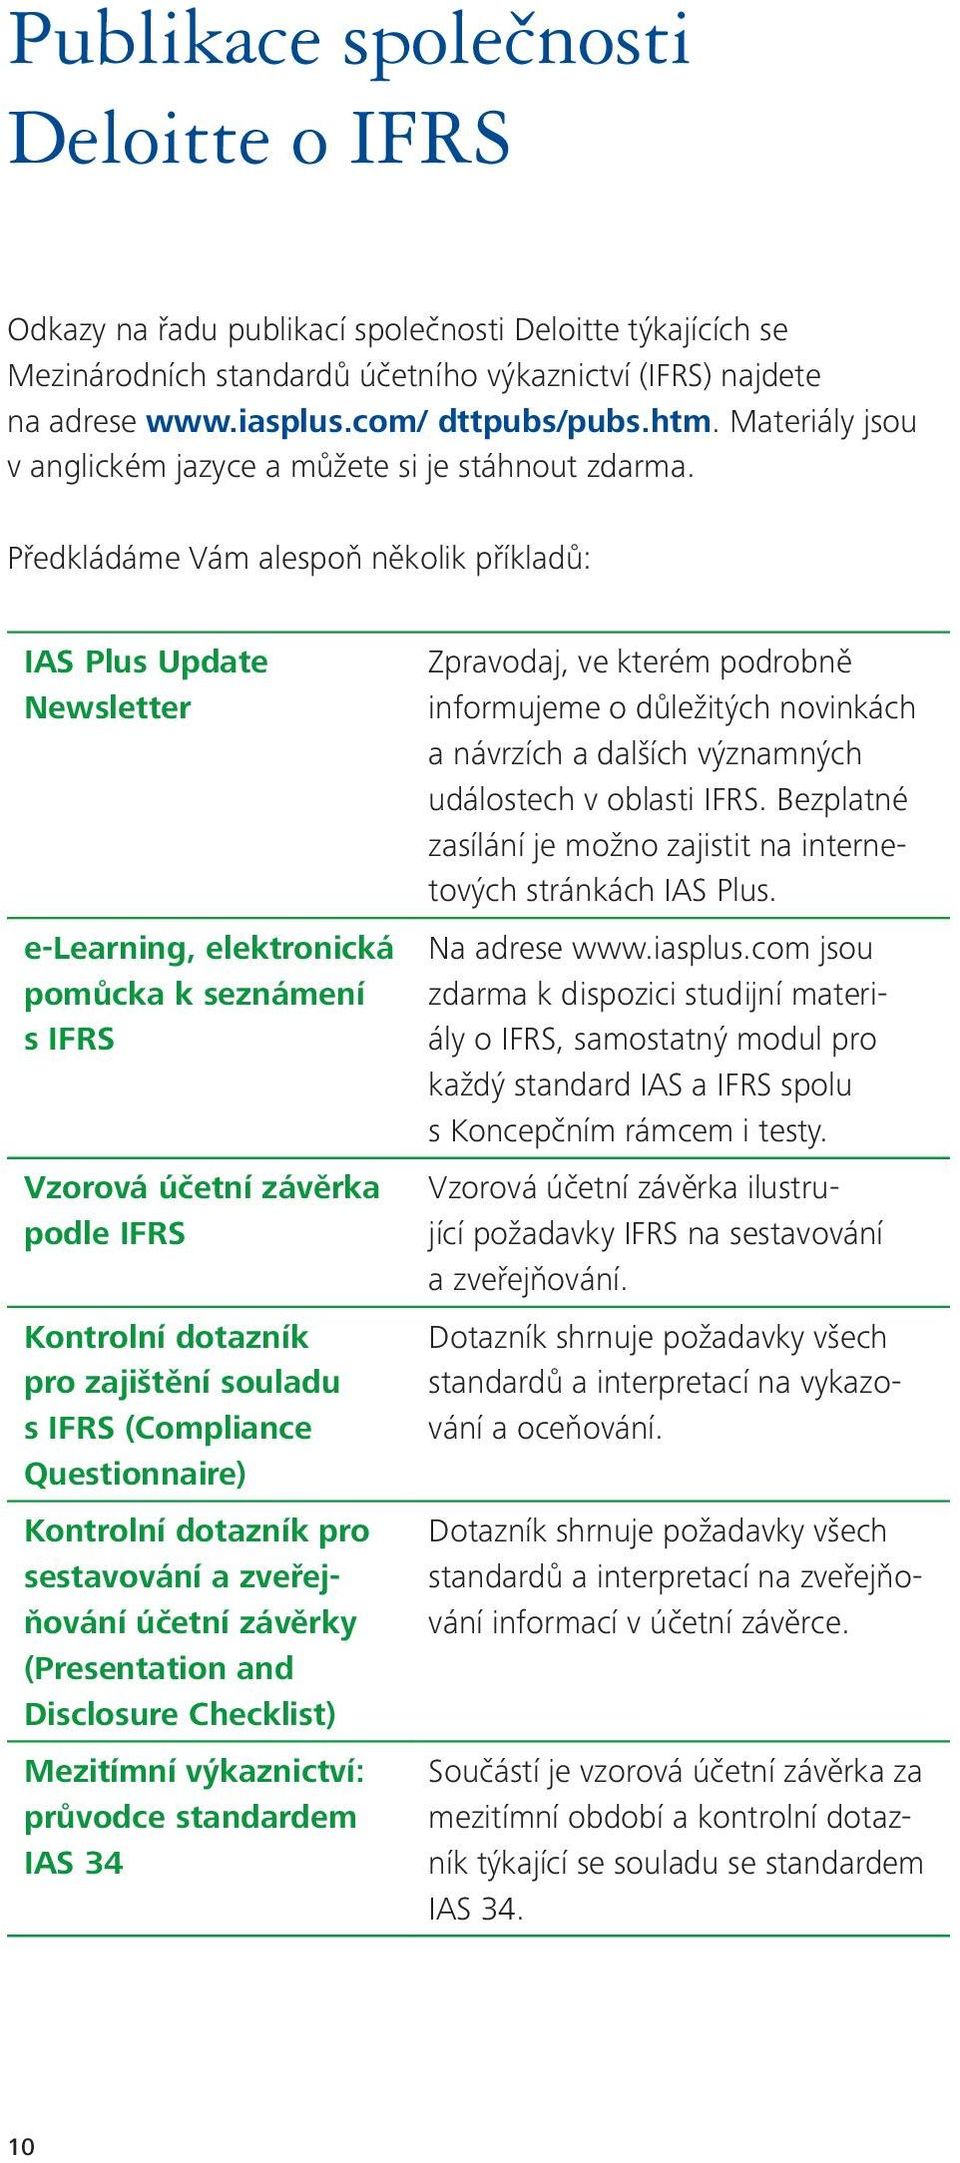 Předkládáme Vám alespoň několik příkladů: IAS Plus Update Newsletter e-learning, elektronická pomůcka k seznámení s IFRS Vzorová účetní závěrka podle IFRS Kontrolní dotazník pro zajištění souladu s